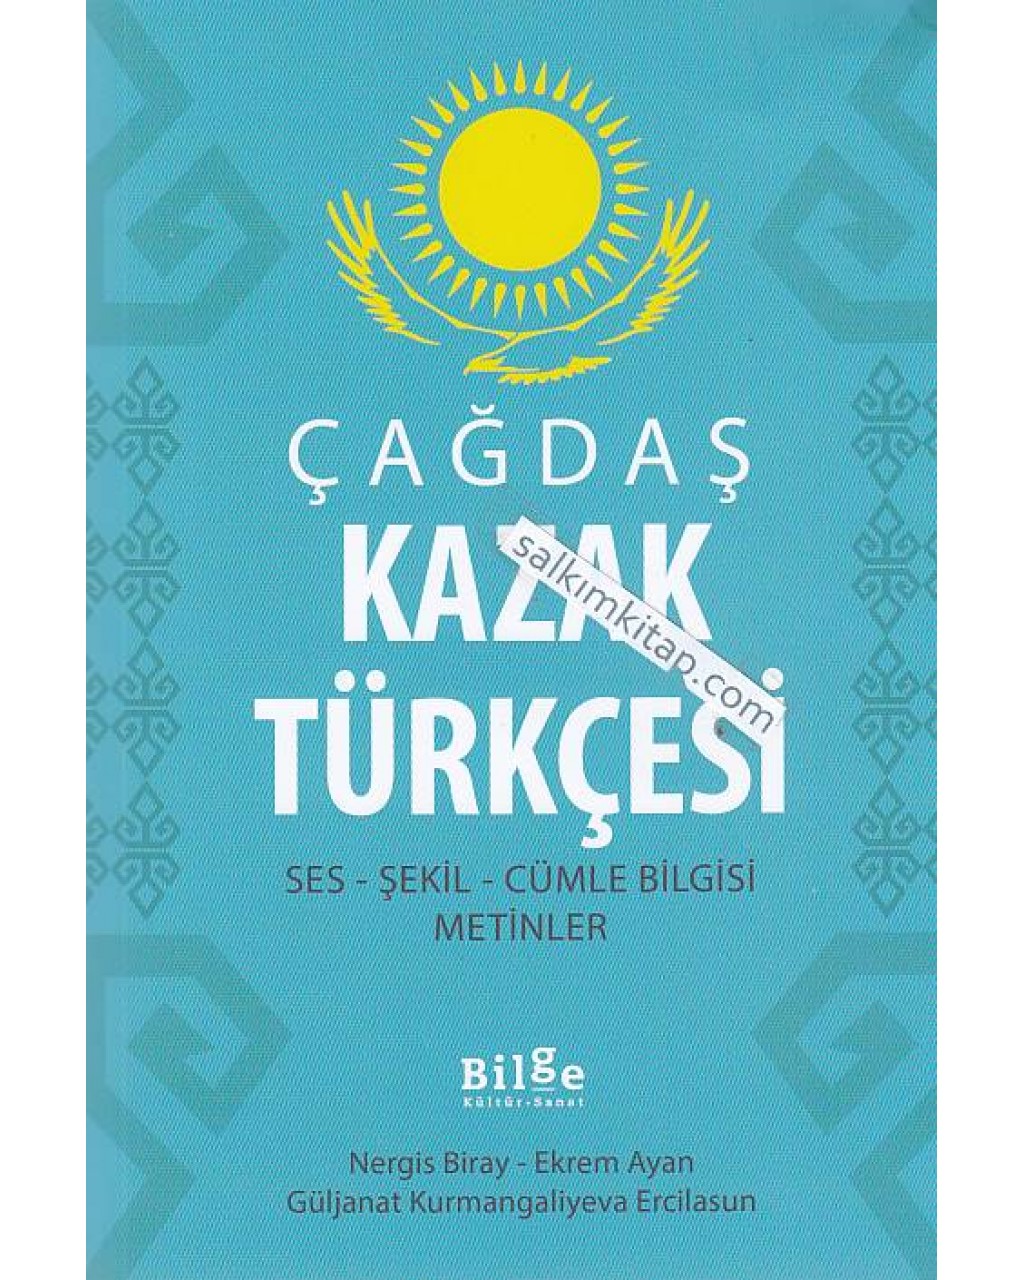 Çağdaş Kazak Türkçesi Ses - Şekil - Cümle Bilgisi - Metinler